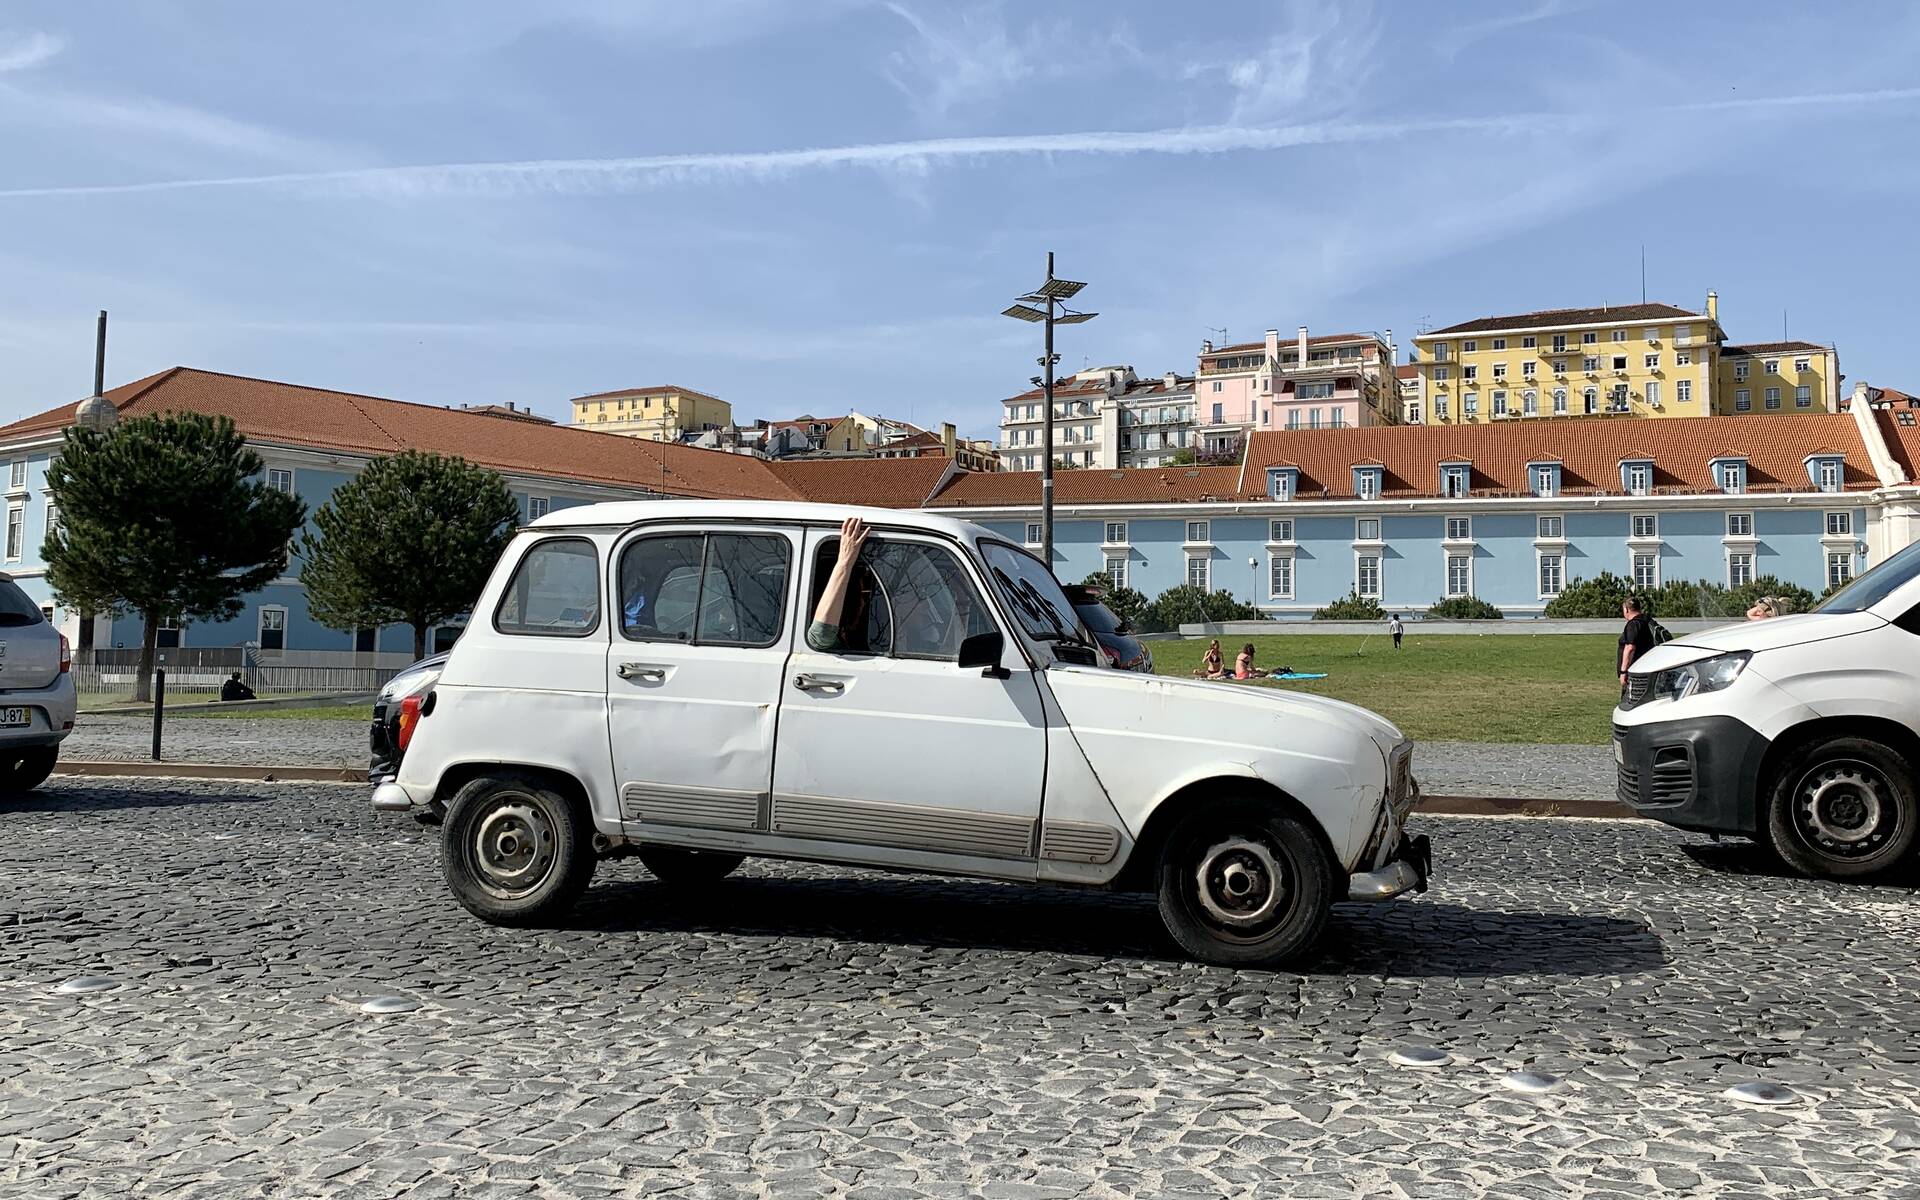 Photos : 11 véhicules spéciaux et inusités croisés au Portugal 569083-photos-11-vehicules-speciaux-et-inusites-croises-au-portugal